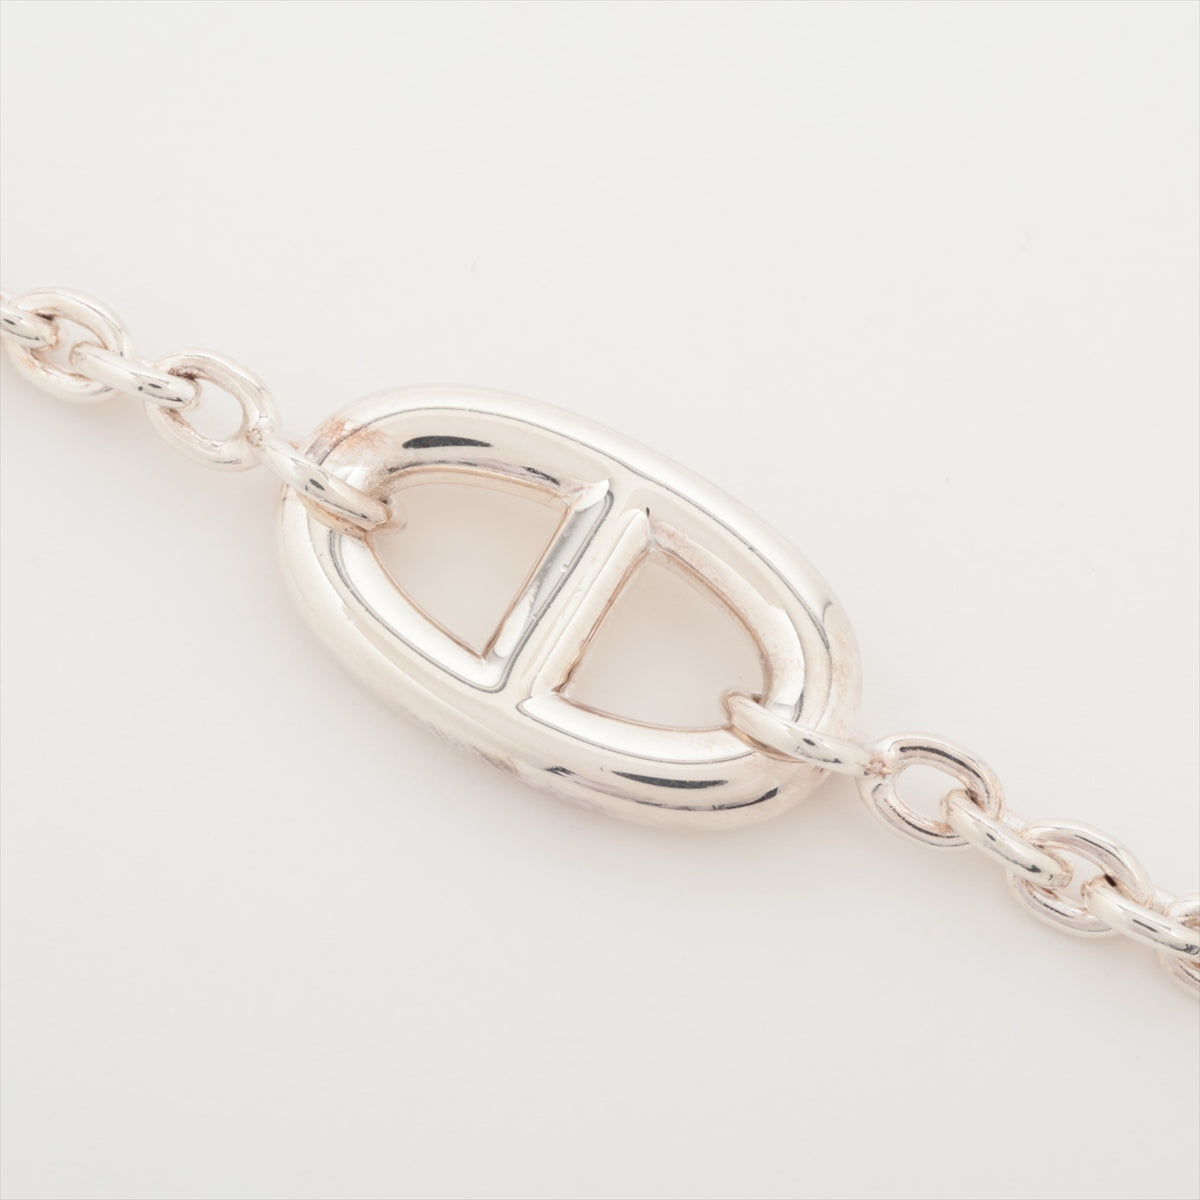 Hermès Chaîne d'Ancre Farandole Bracelet SH 925 25.0g Silver